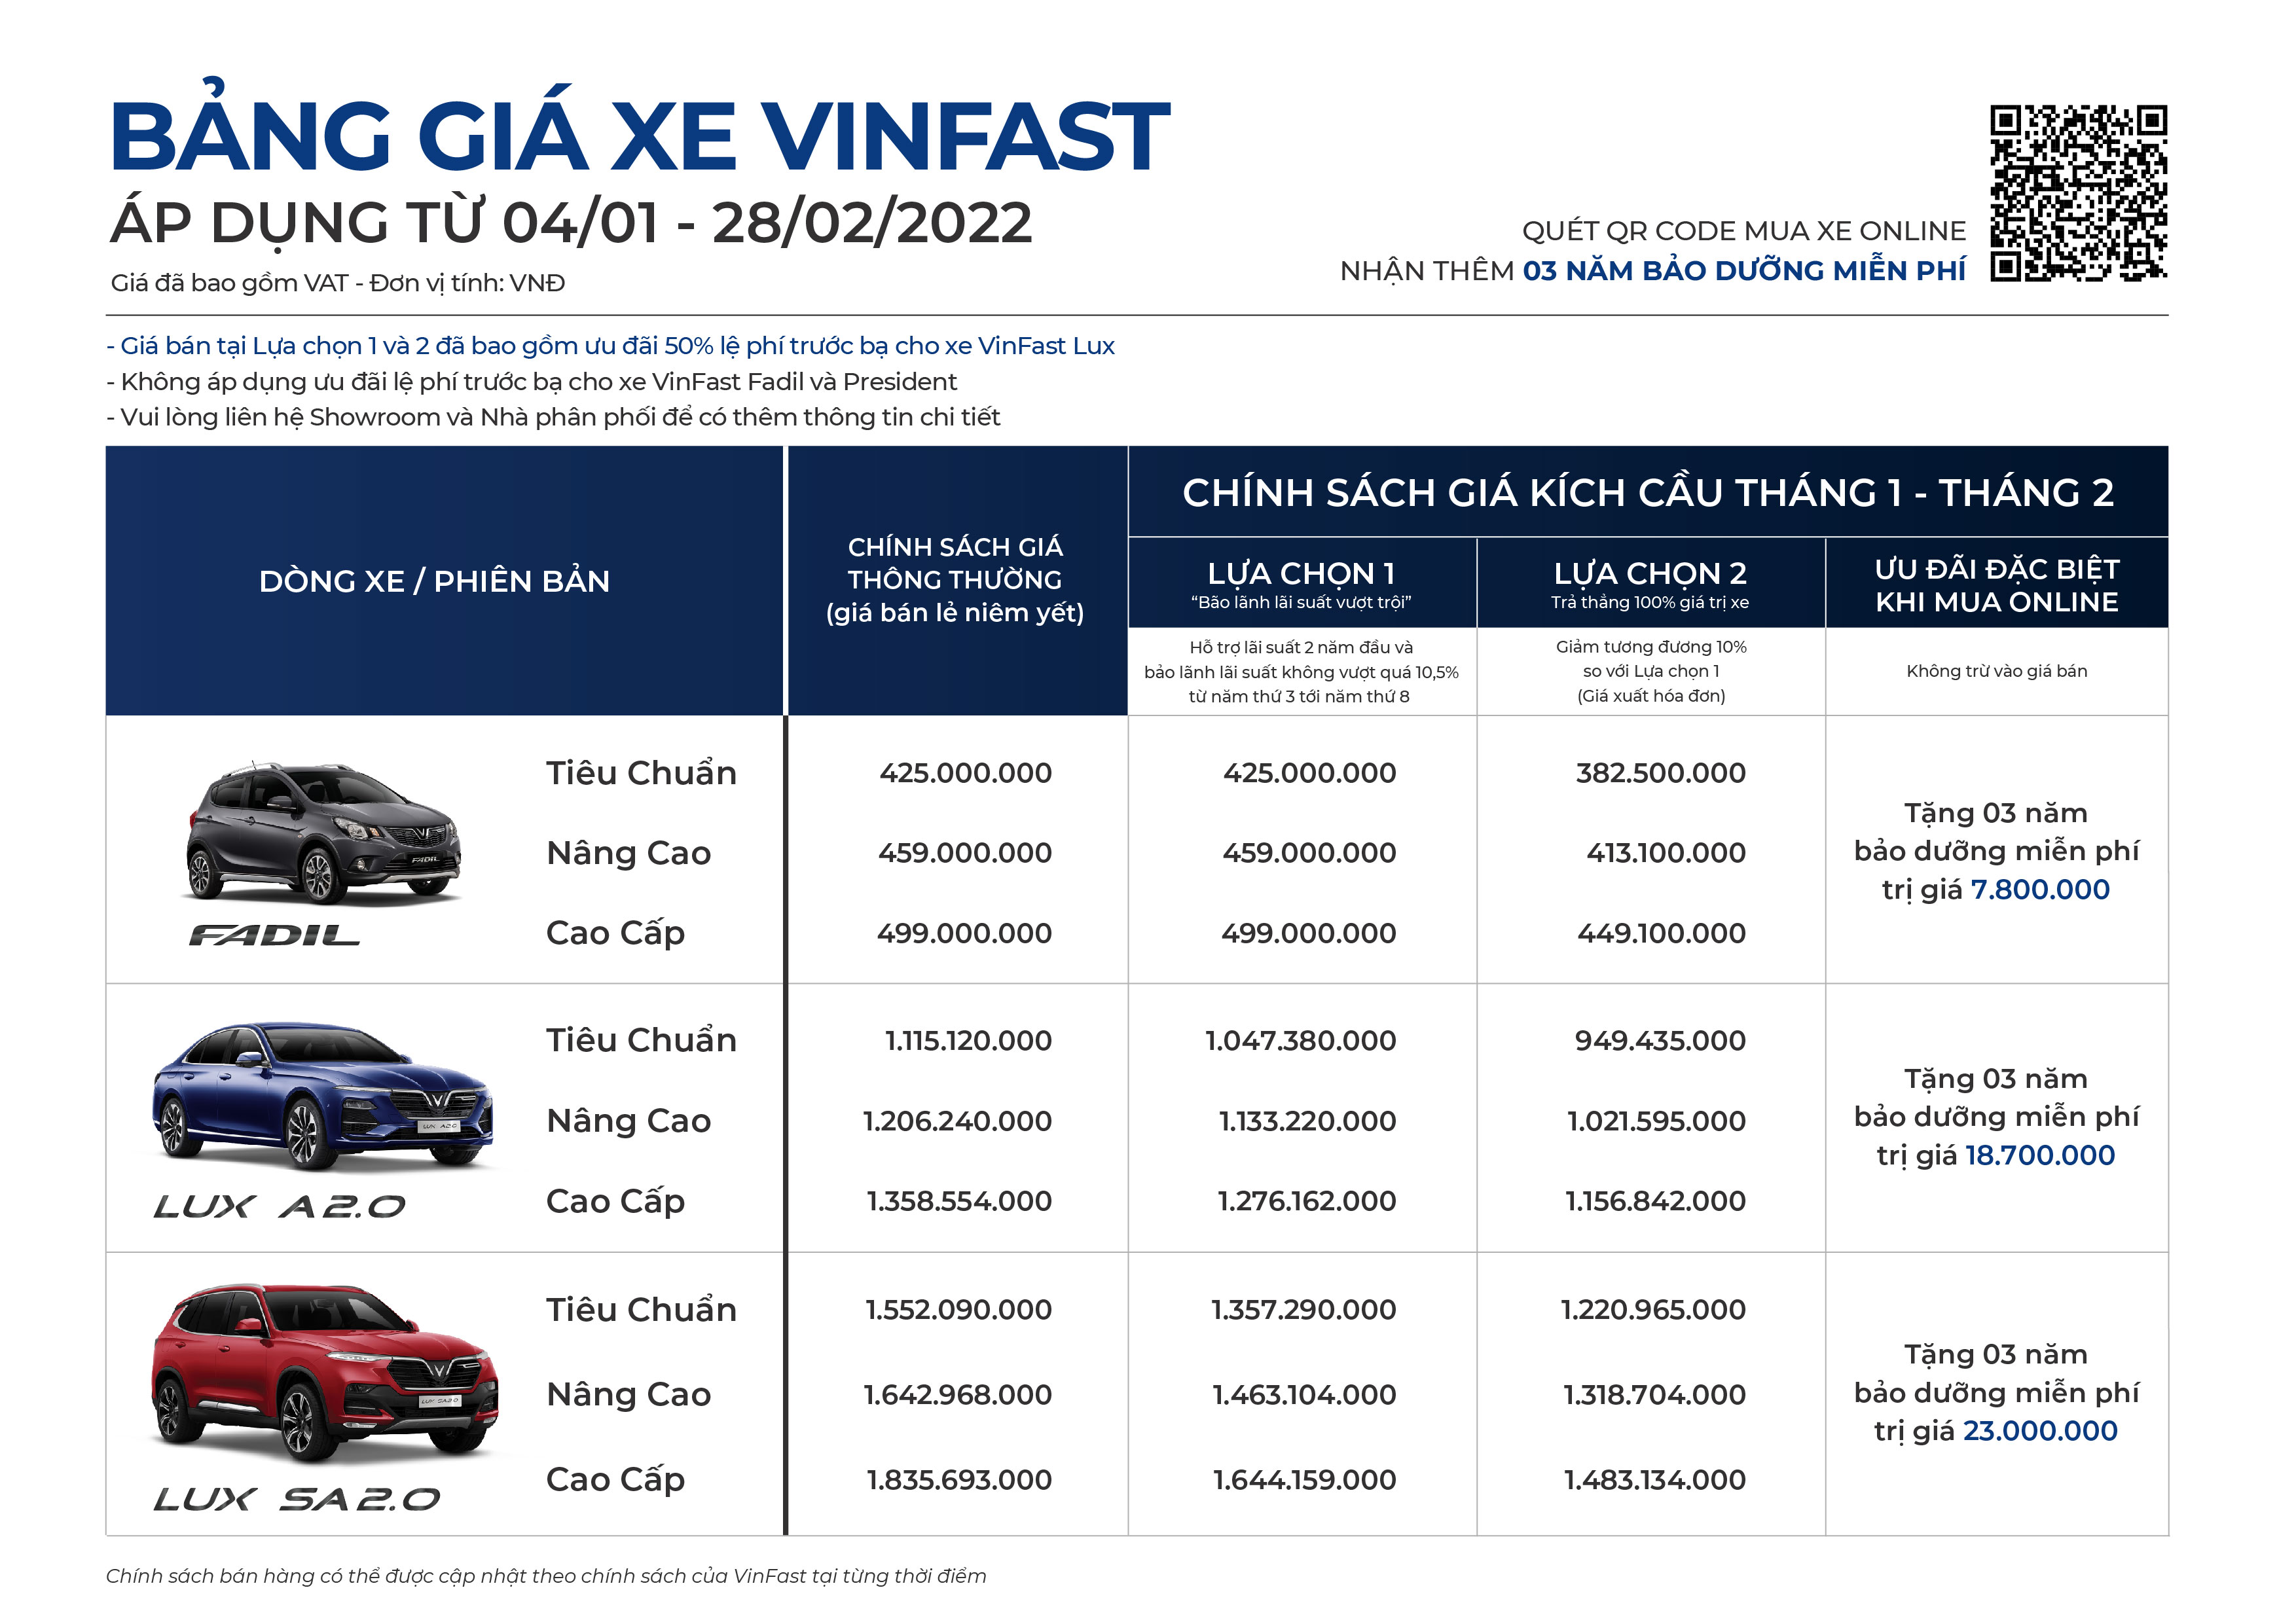 VinFast Fadil đạt thành tích khủng, khẳng định đẳng cấp thương hiệu ô tô Việt Nam ảnh 2